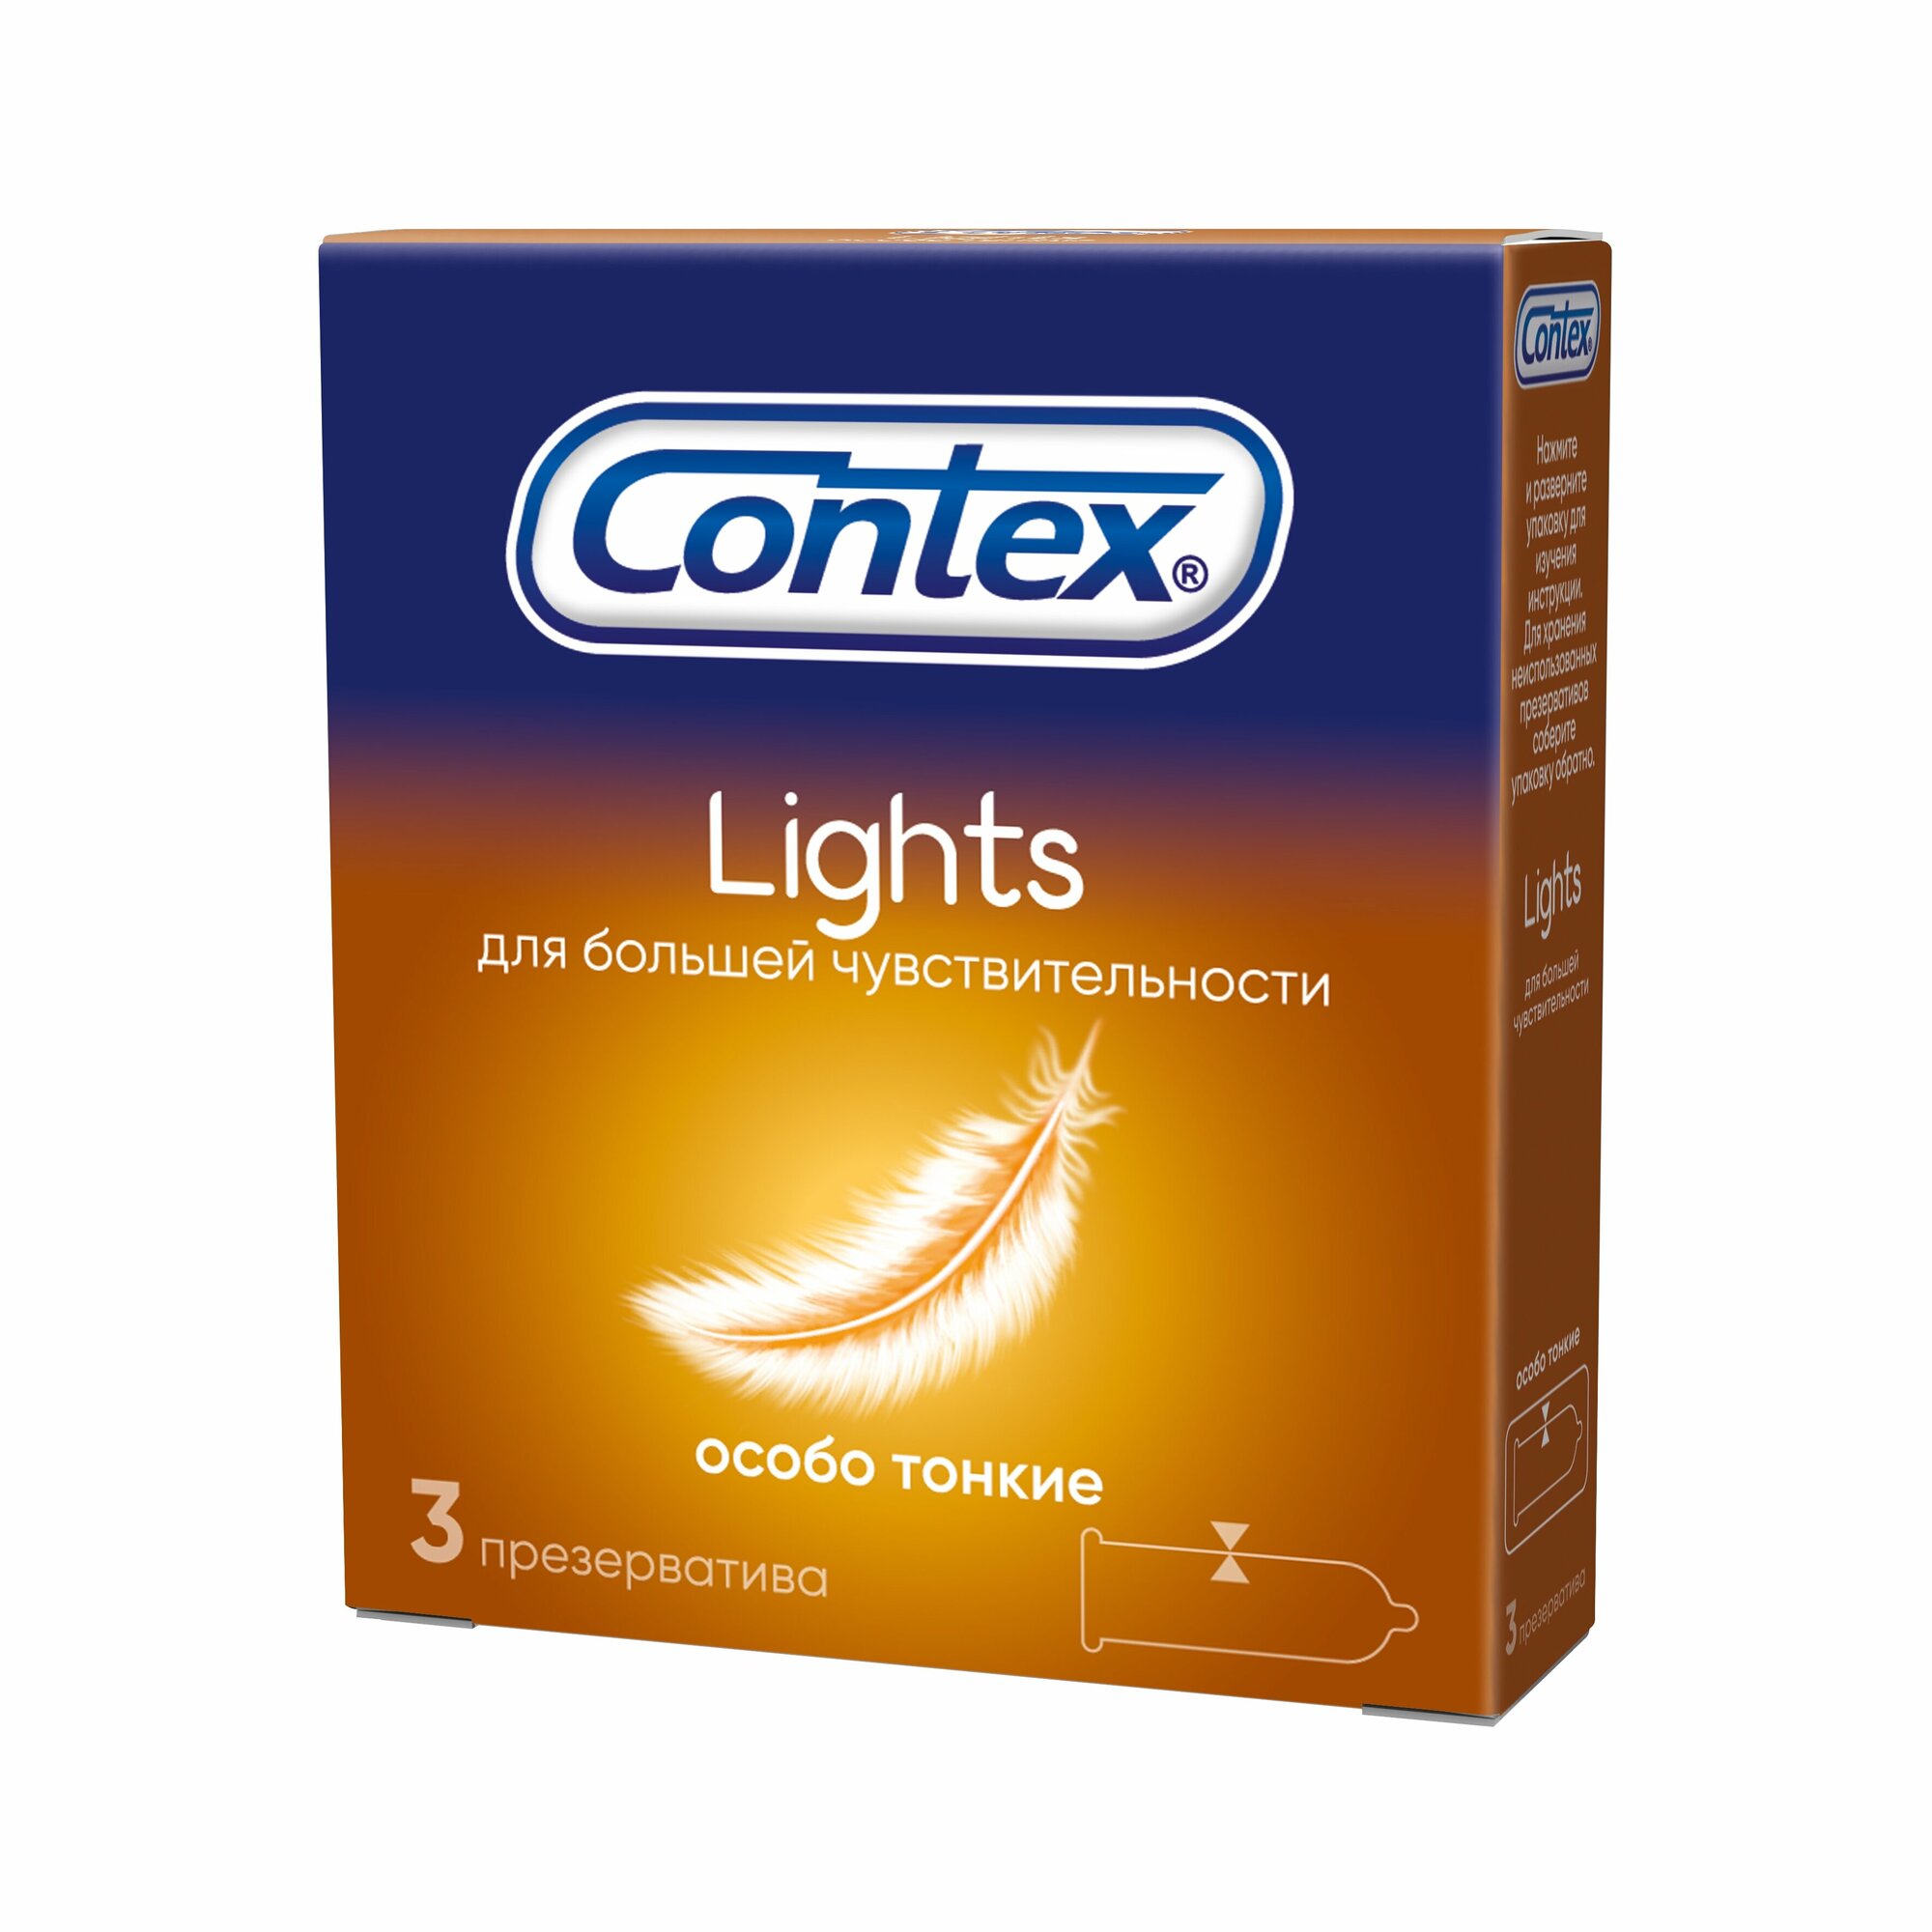 Презервативы Contex (Контекс) Light особо тонкие 12 шт. Рекитт Бенкизер Хелскэар (ЮК) Лтд - фото №17